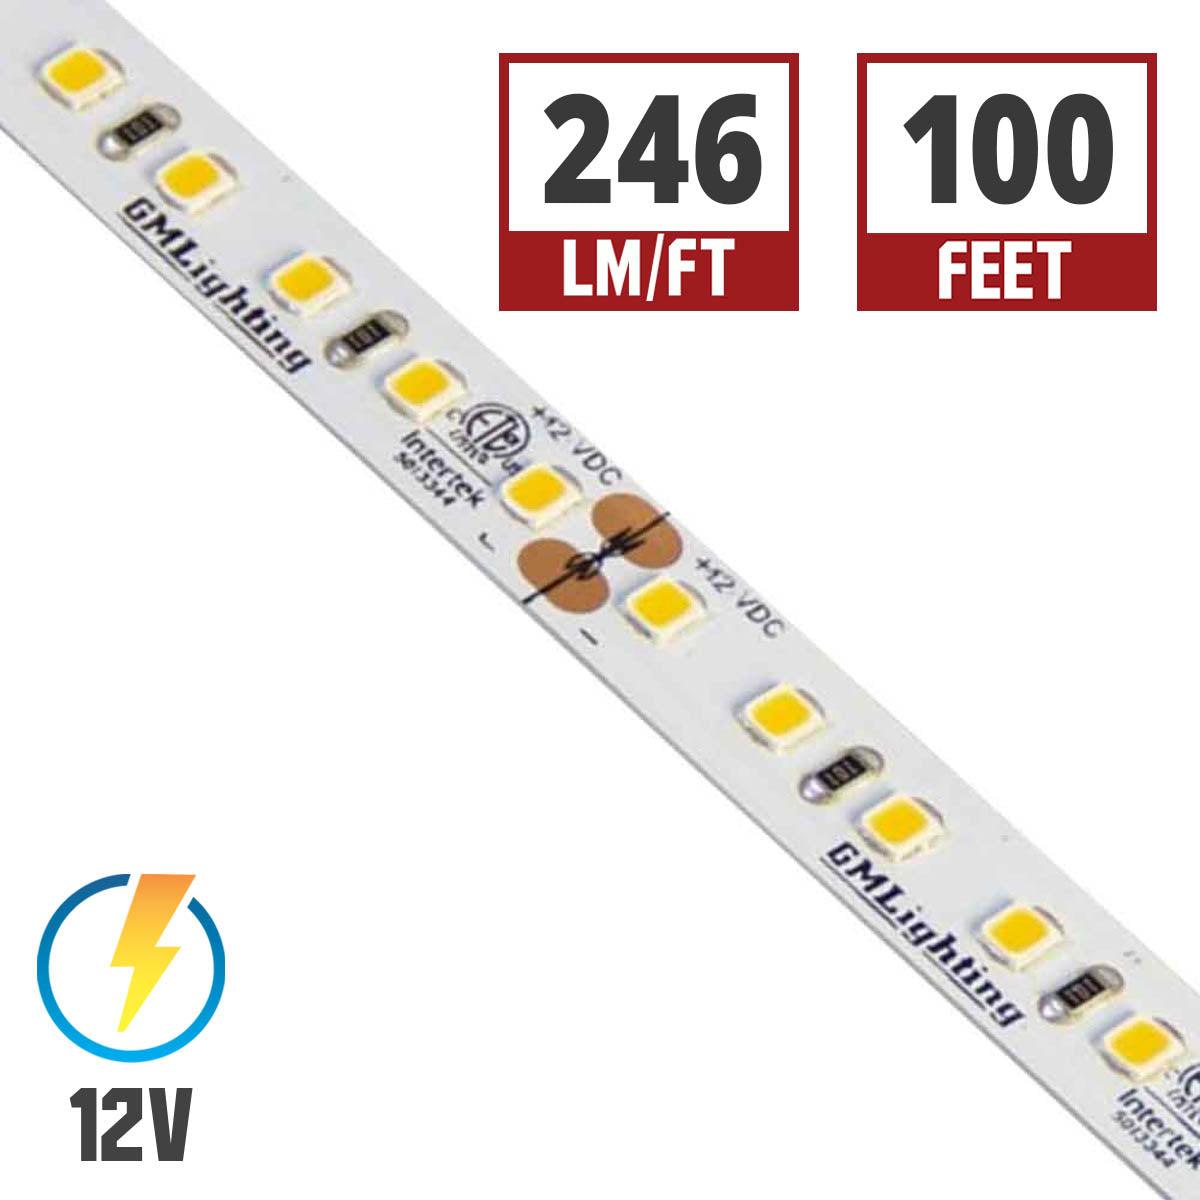 LTR-P Pro LED Strip Light, 3.0W / ft, 240 Lumens per Ft, 12V - Bees Lighting